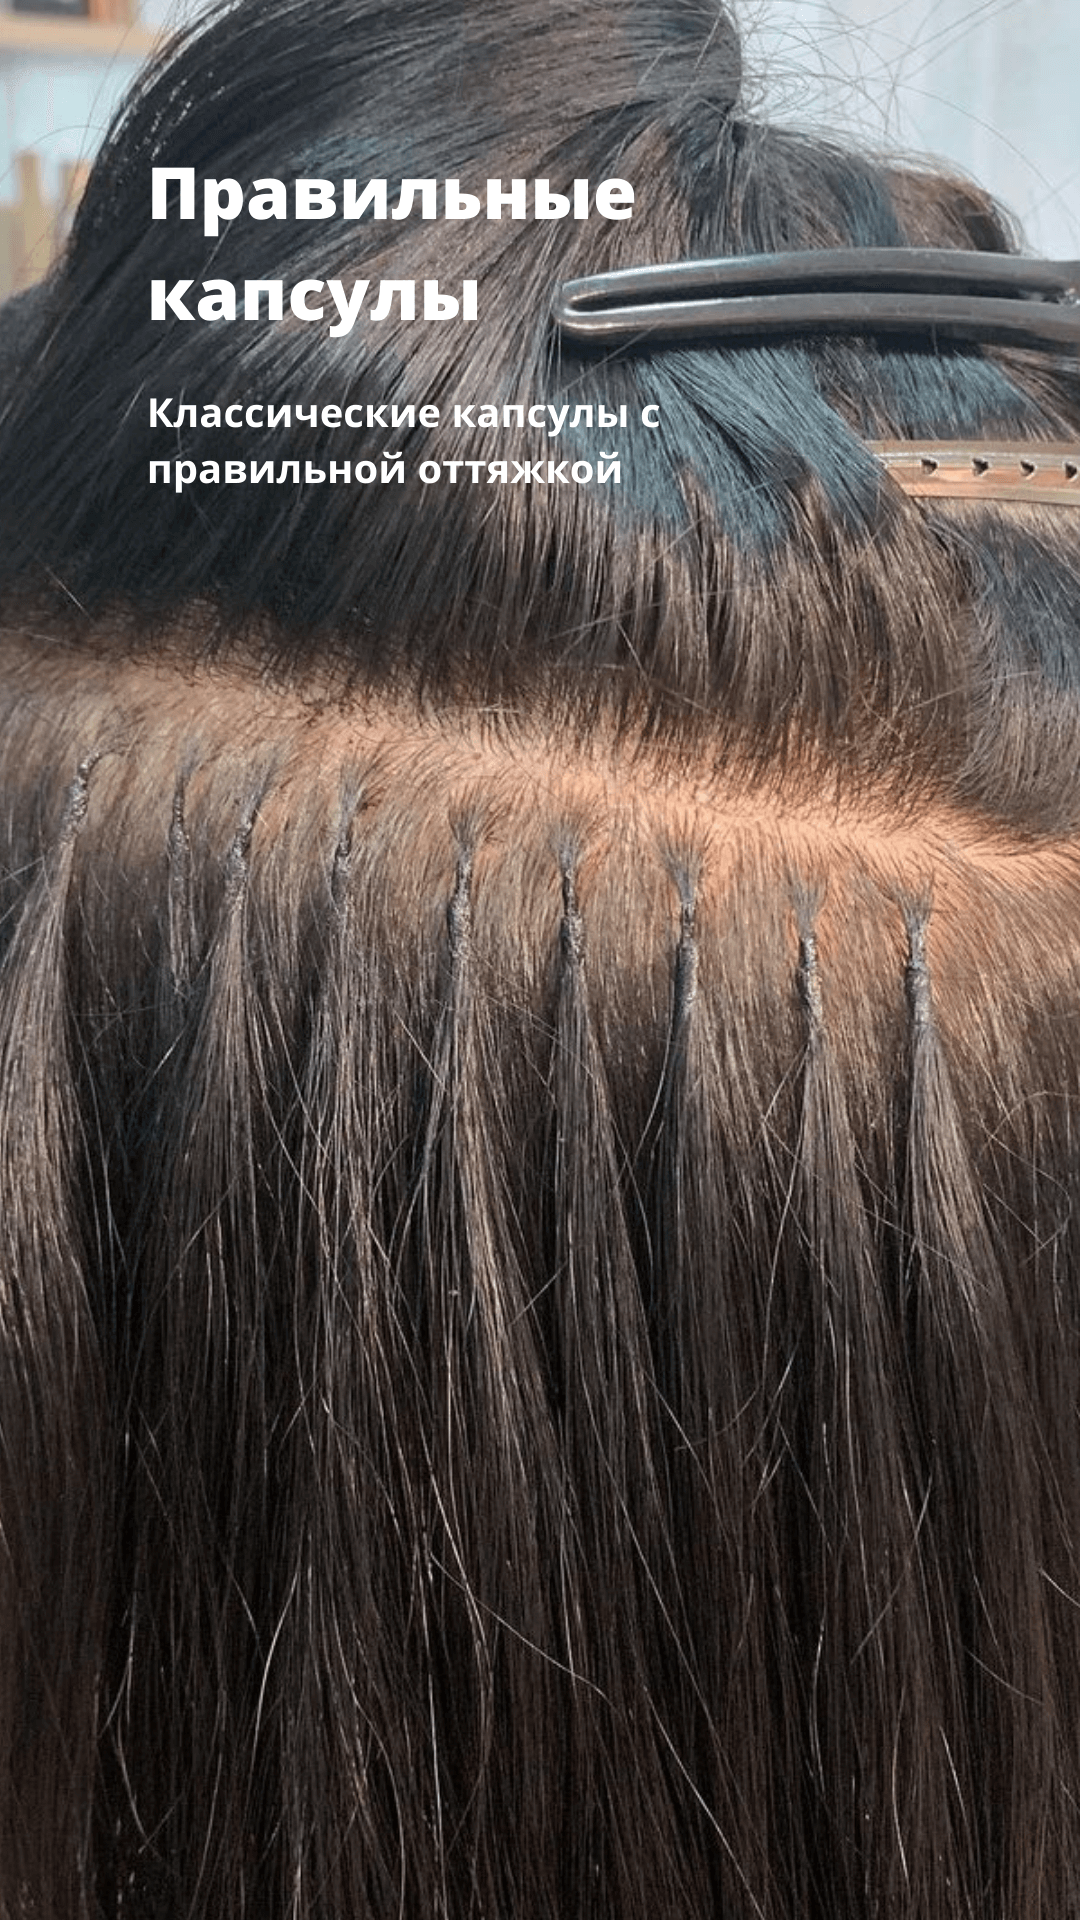 Наращивание Волос В Новосибирске Цена Фото